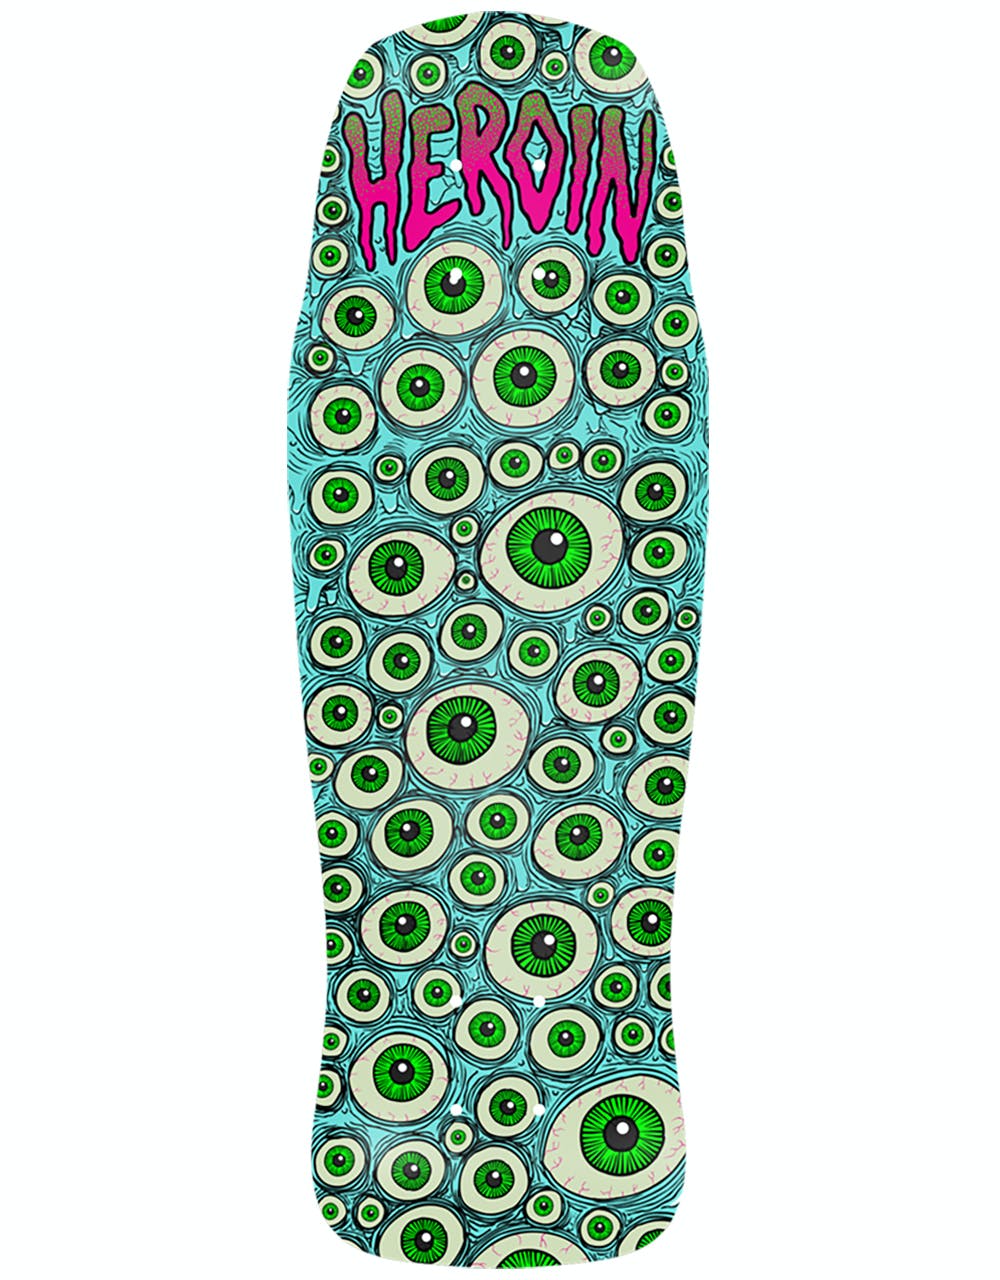 Heroin Eyeballer Skateboard Deck - 10.25"